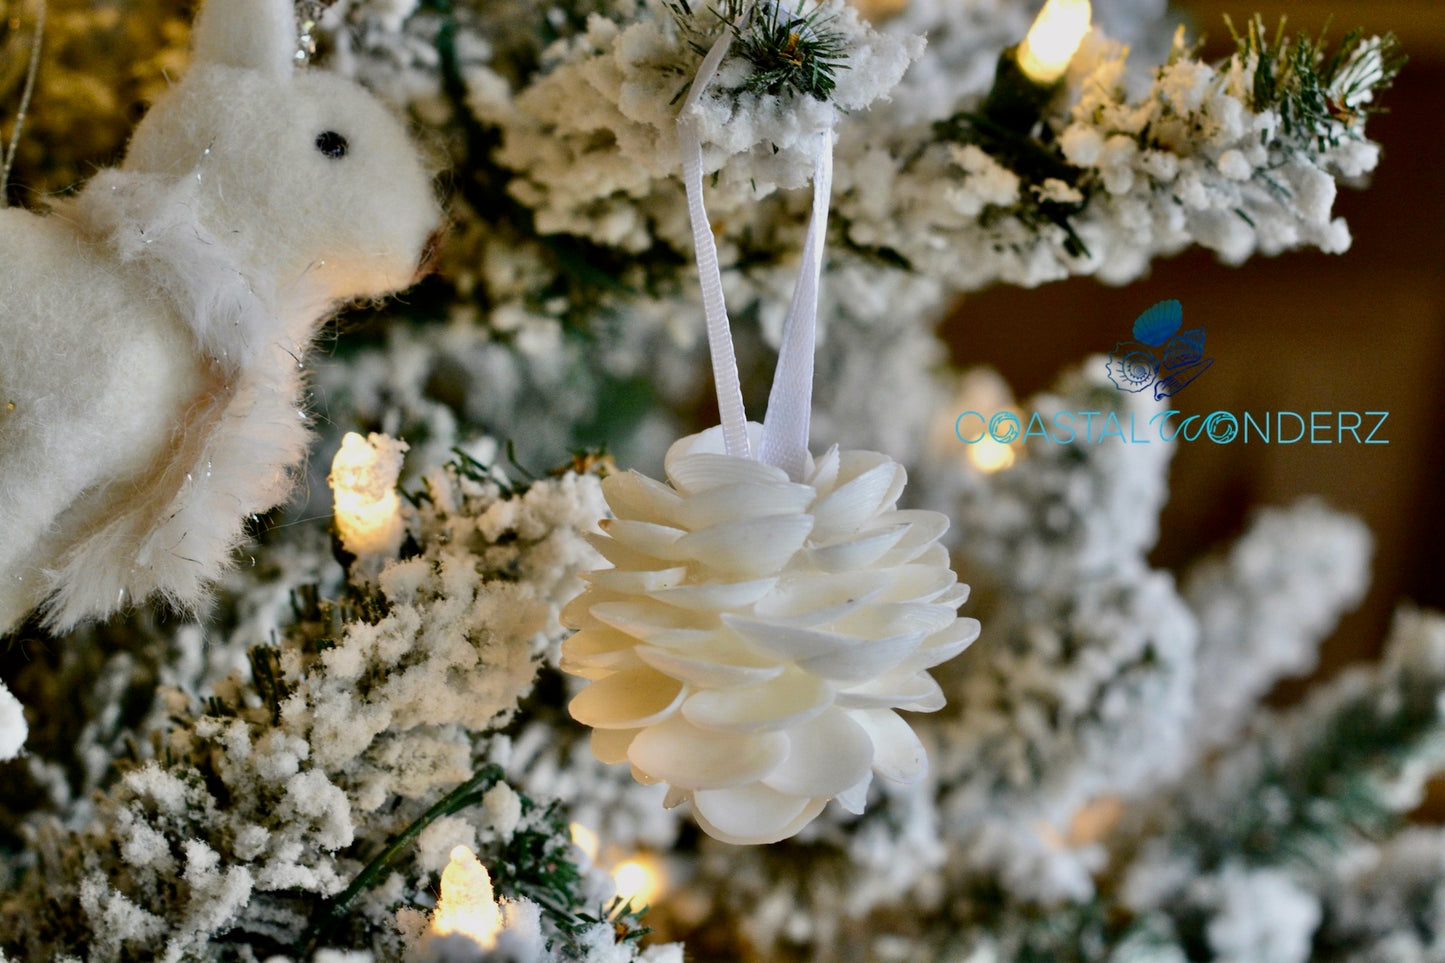 2" White Cay Cay Ornament